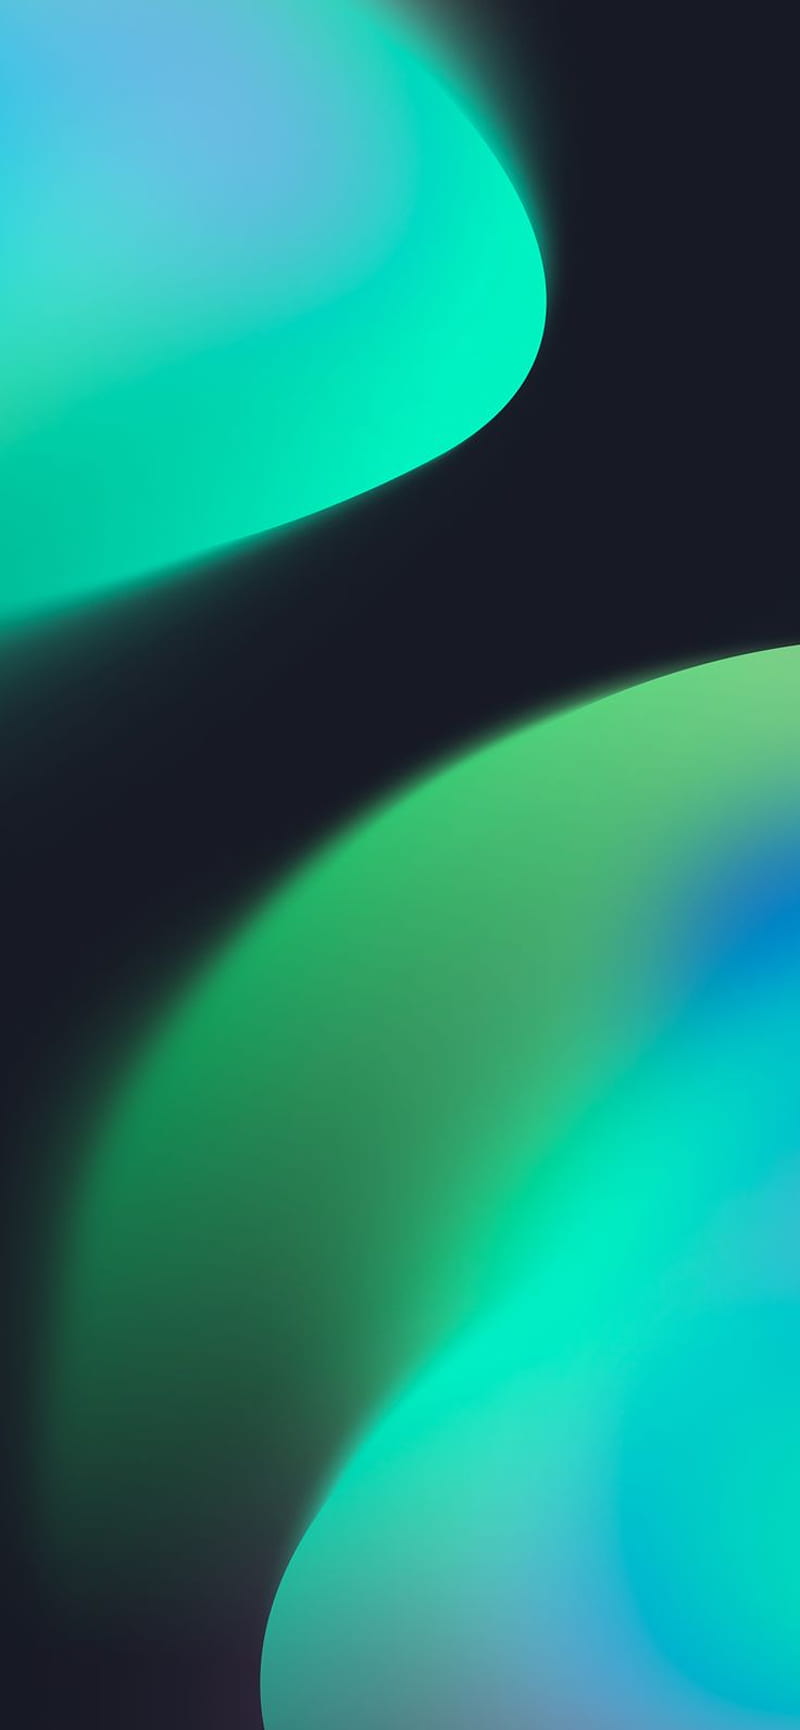 IOS 16 - Concept (Green - Dark) - Central. Original iphone, Q, iPhone ...